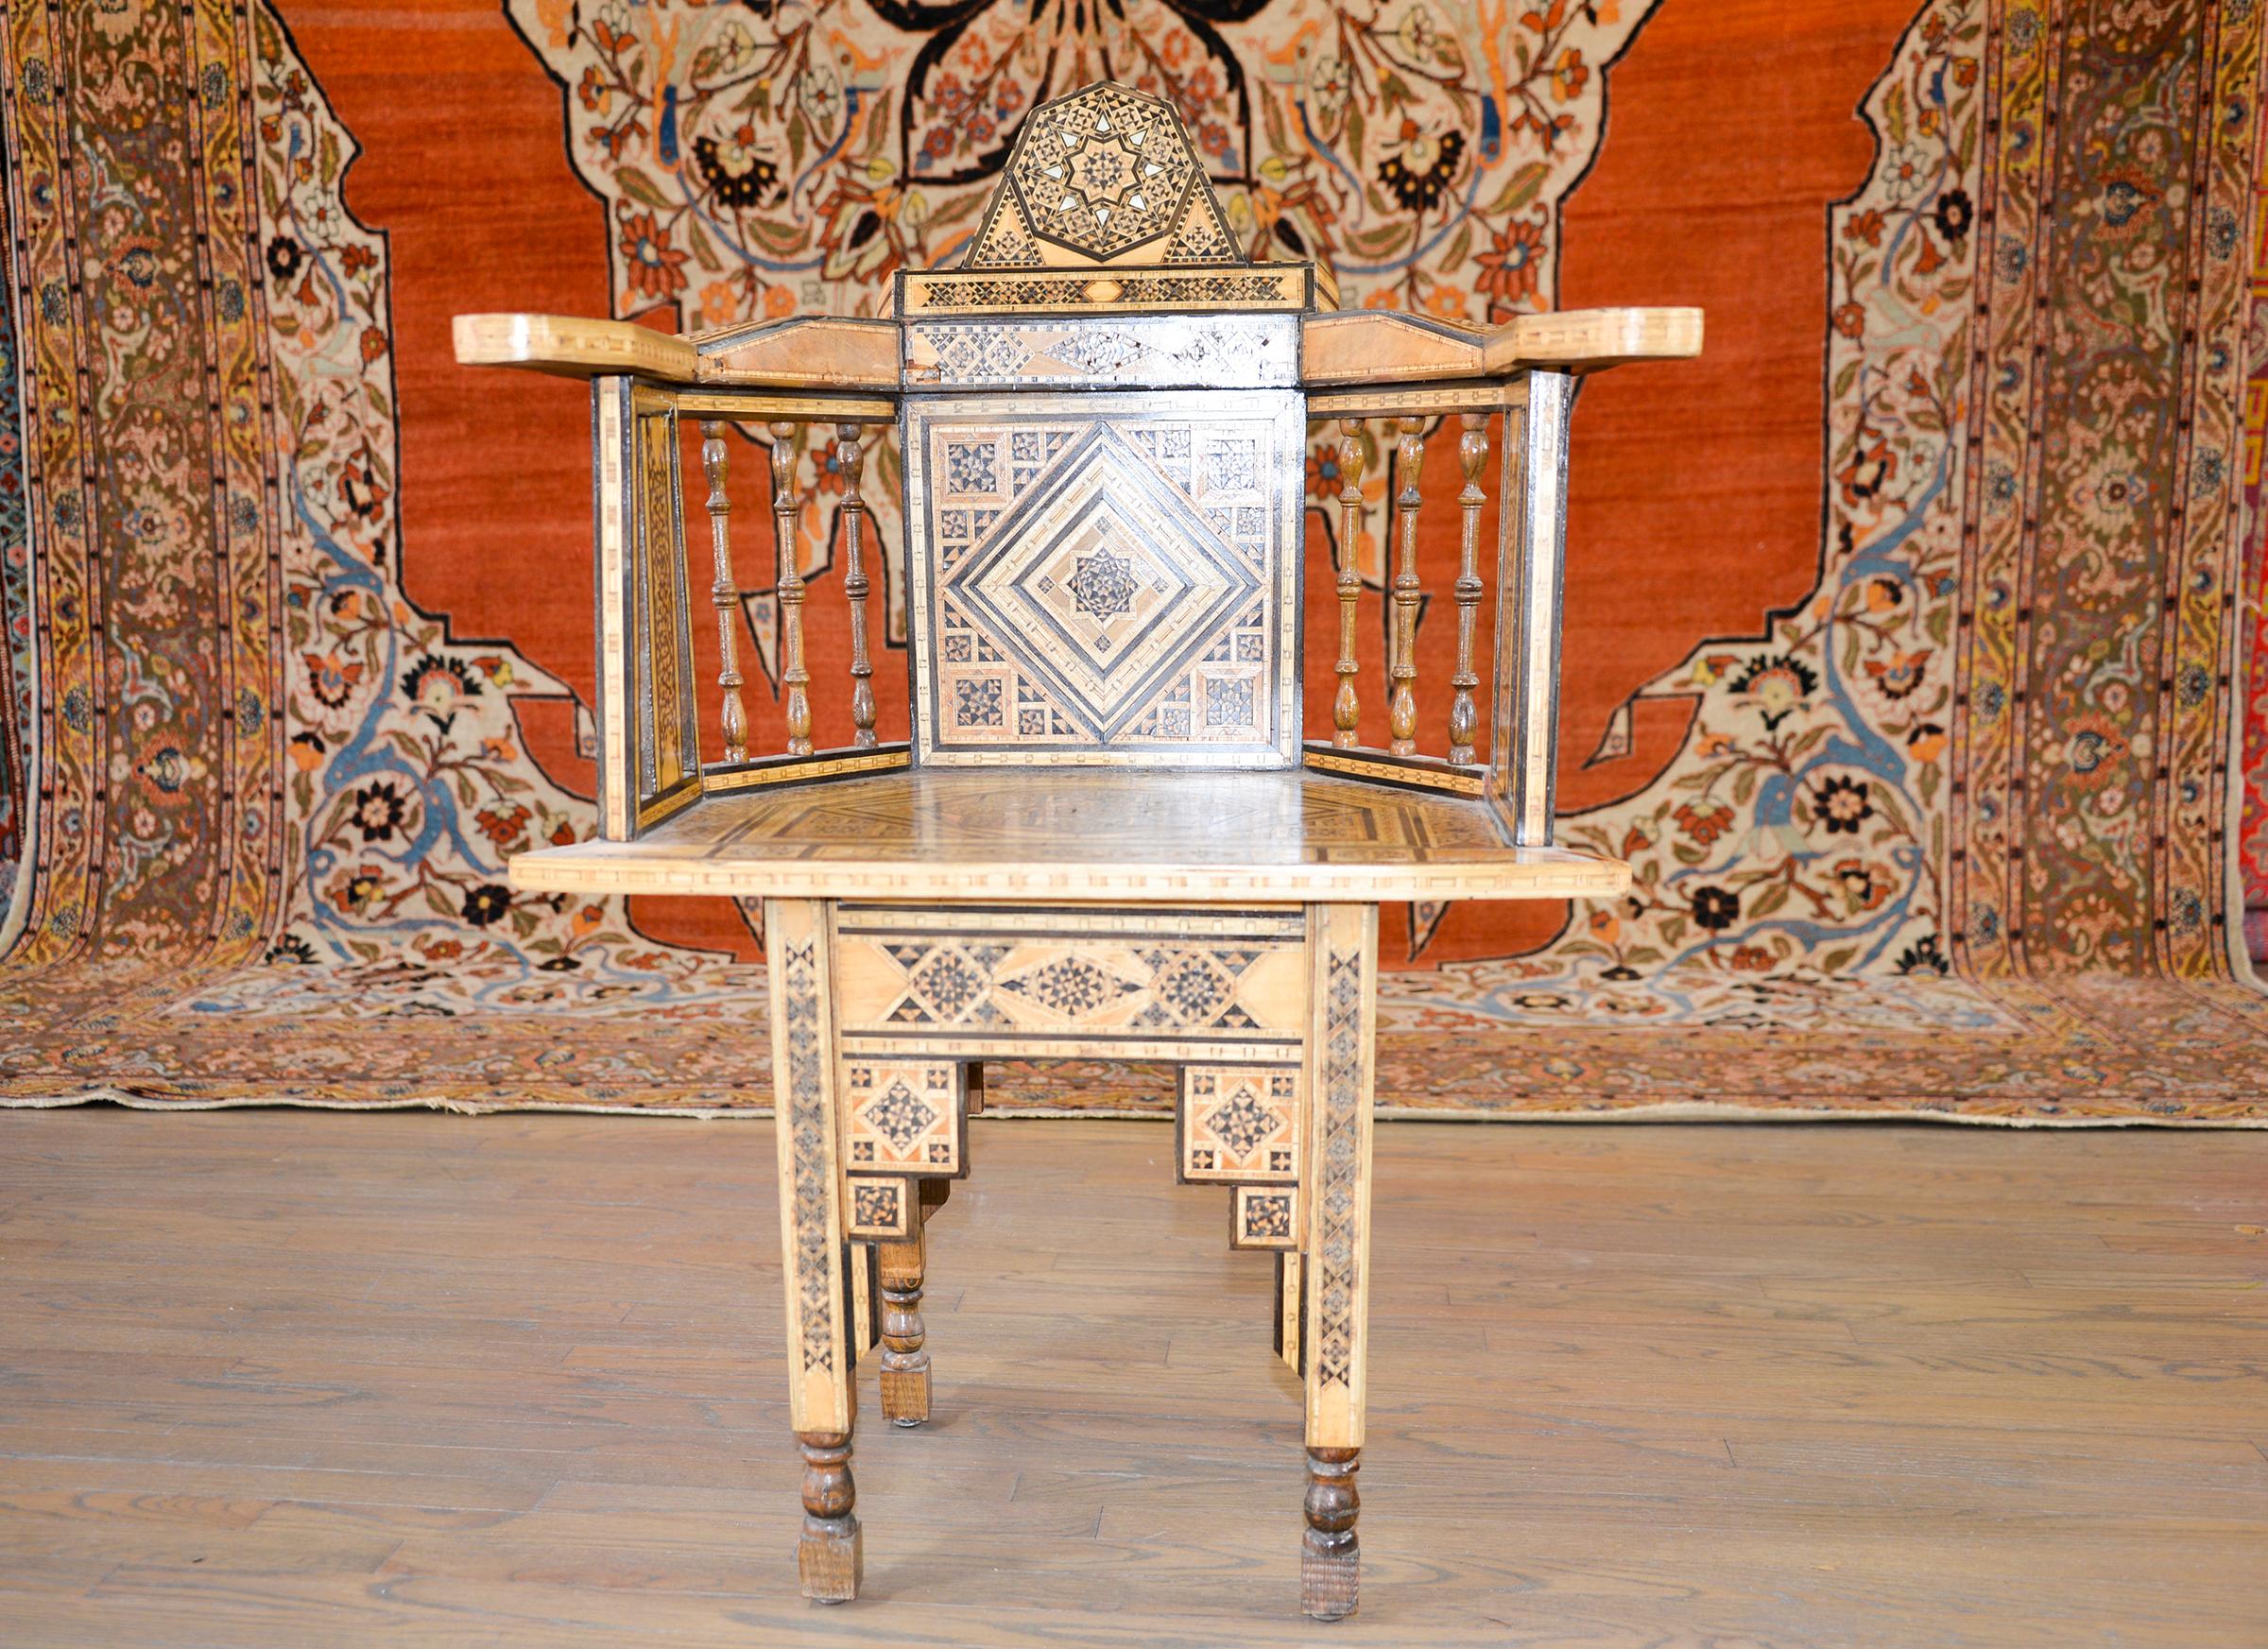 Marokkanischer Sessel aus dem frühen 20. Jahrhundert mit einem aufwändigen Muster aus sich wiederholenden großen und kleinen achtzackigen Sternen, ausgeführt in eingelegten exotischen und ebonisierten Hölzern und Perlmutt. Die schrägen Arme werden